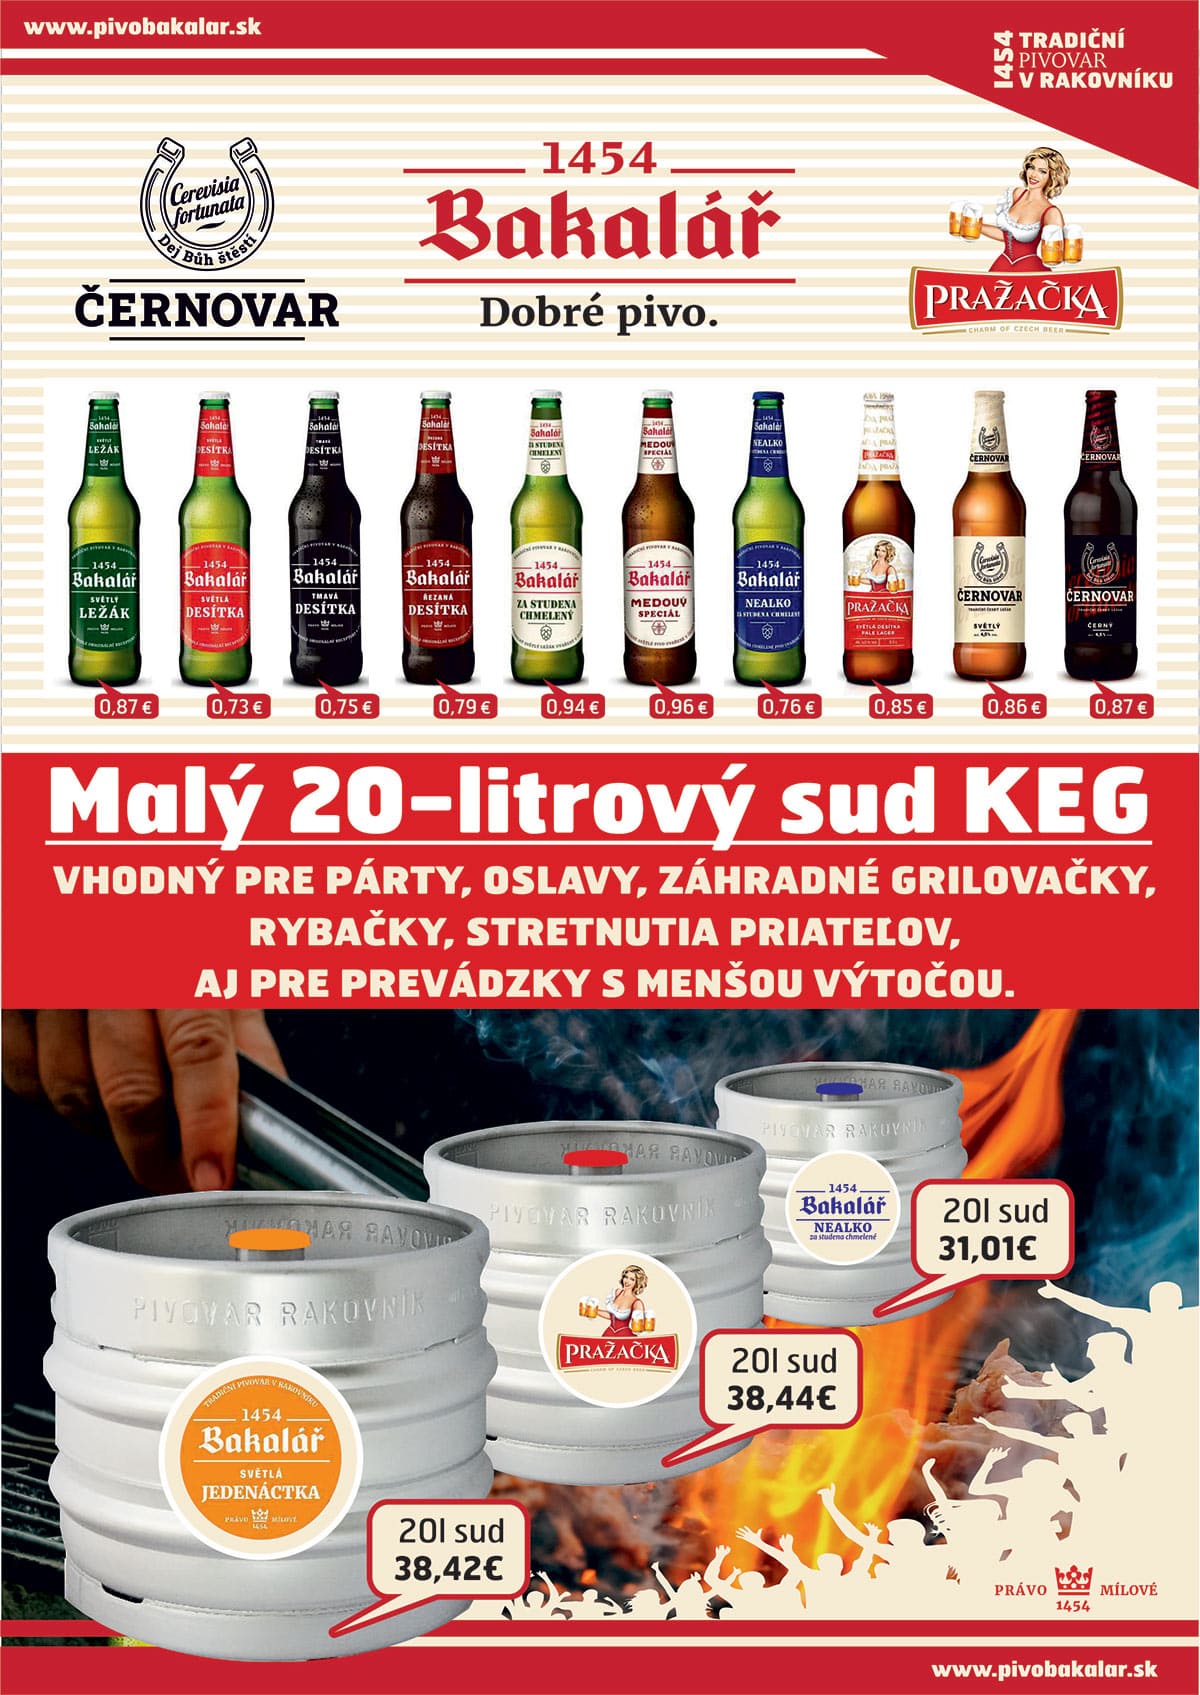 Malý 20-litrový sud KEG - vhodný pre párty, oslavy, grilovačky... Bakalář 11-tka, Pražačka, Nealko